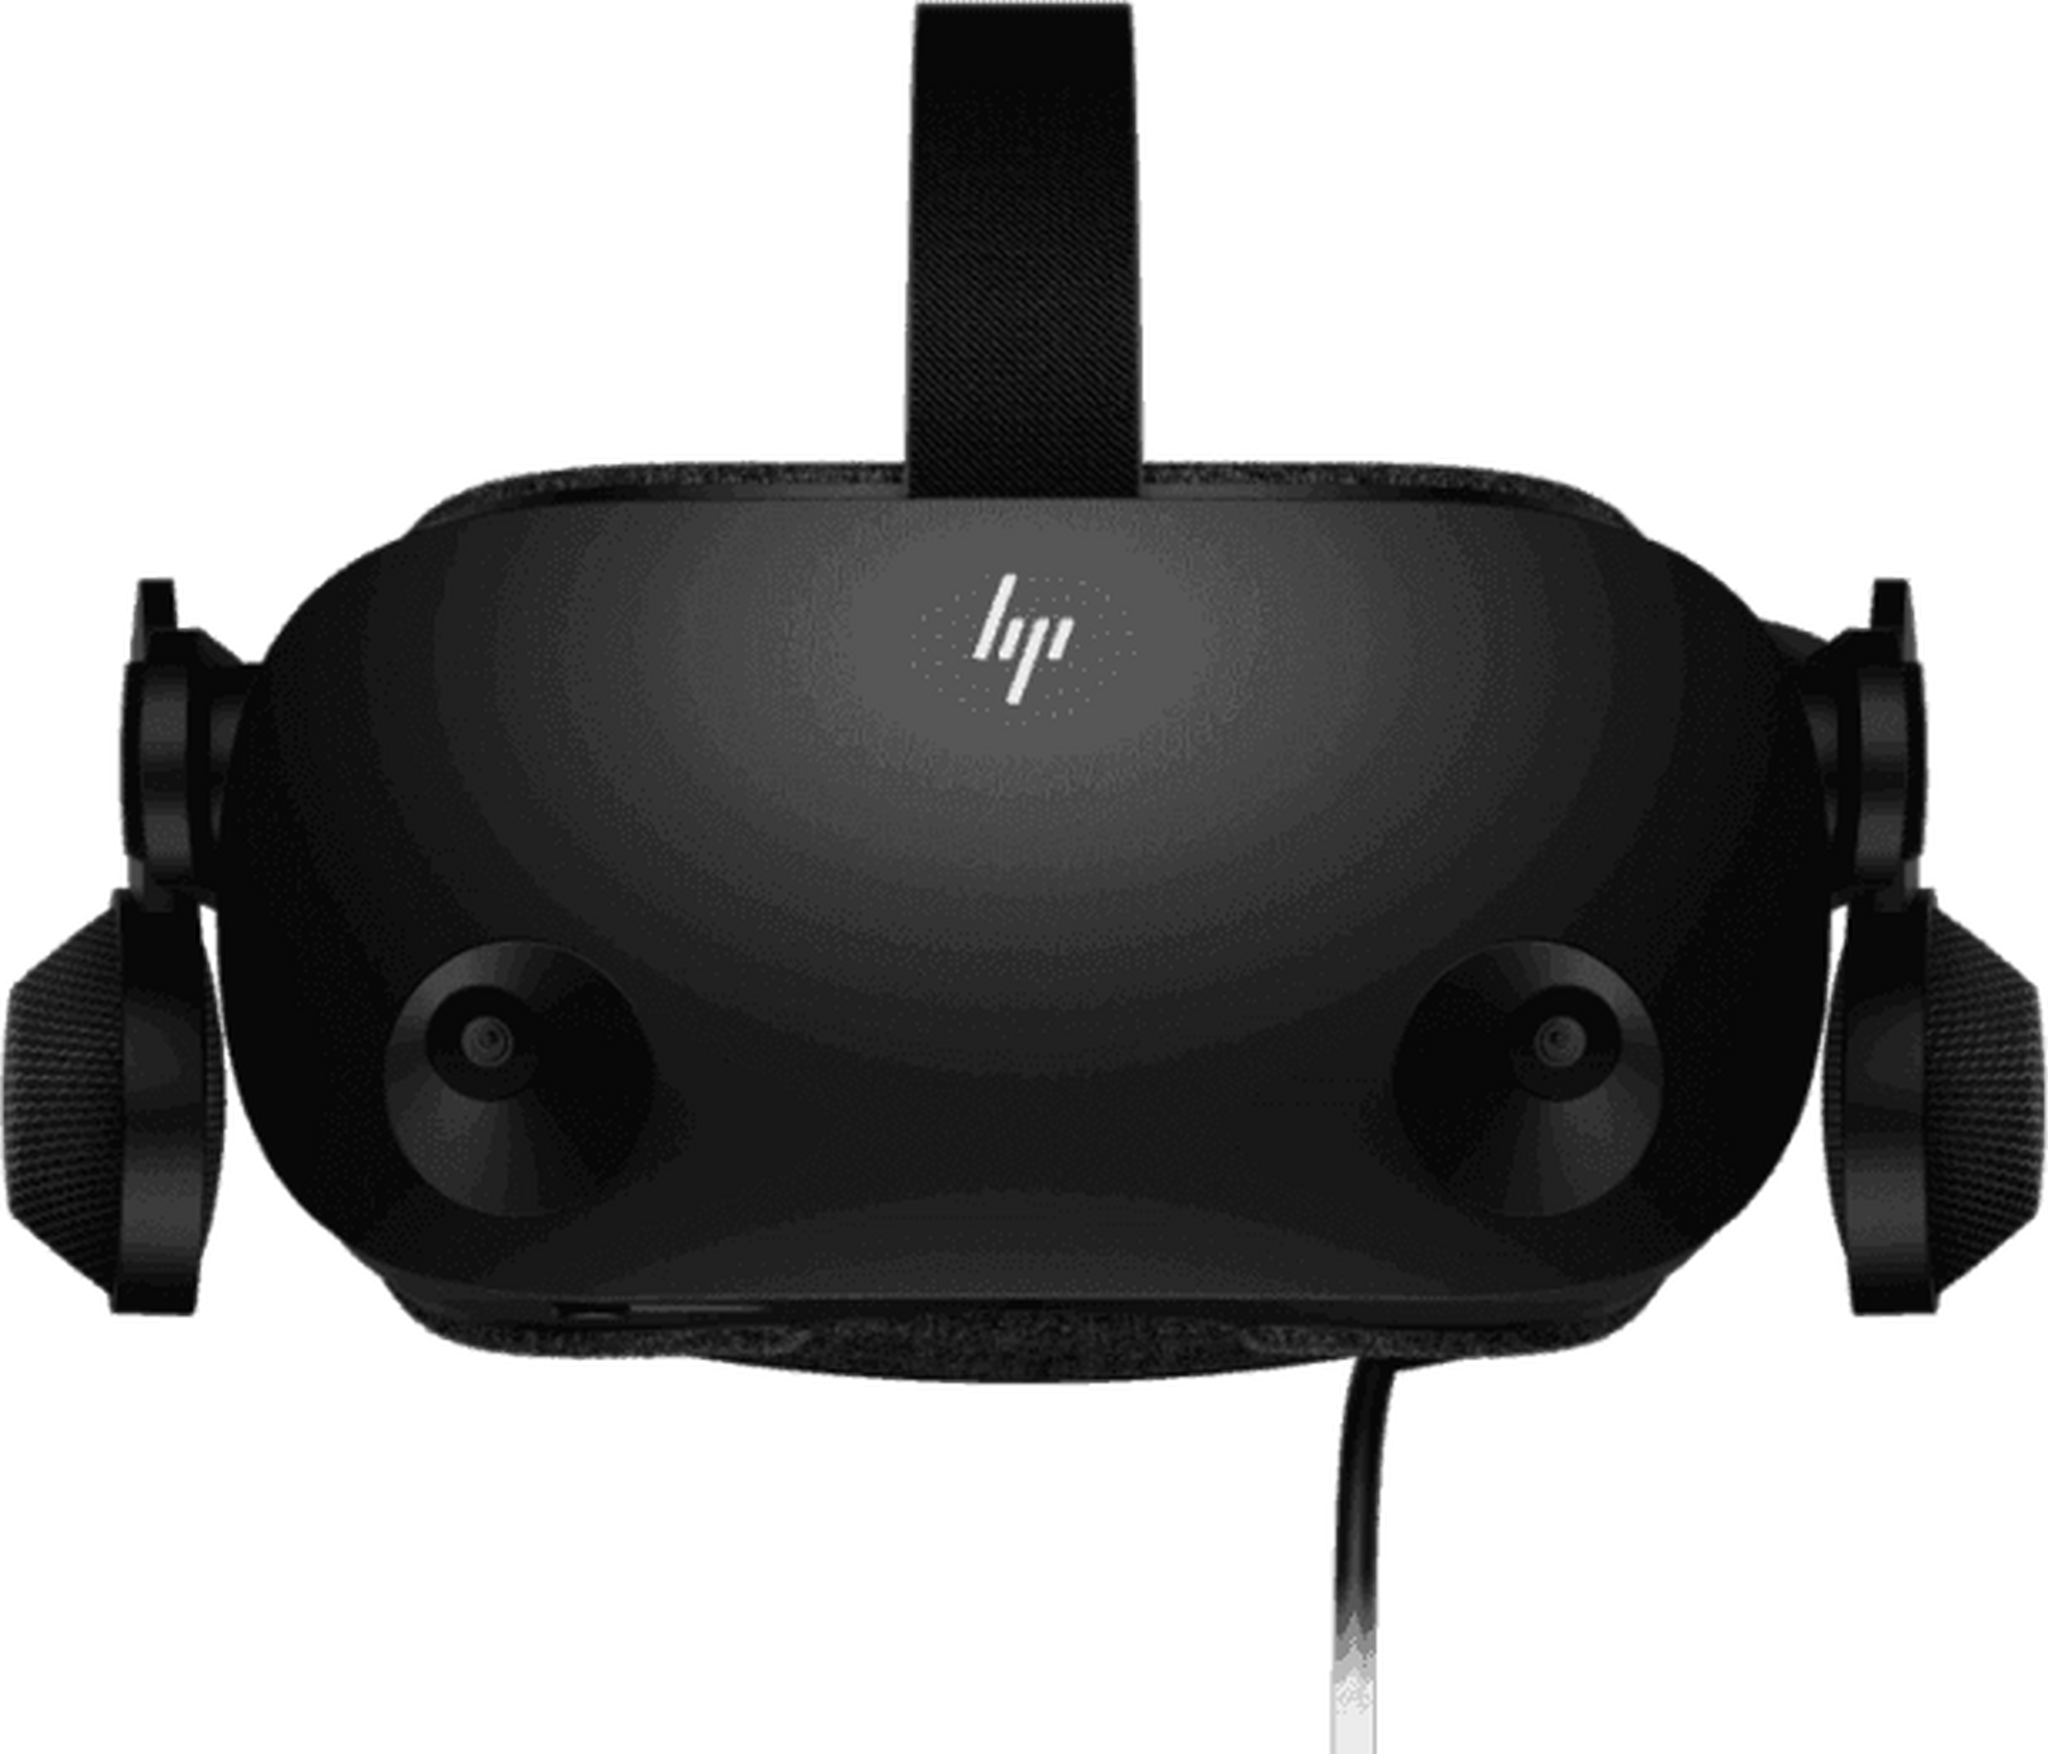 نظارة الواقع الافتراضي ريفيرب جي 2 من اتش بي